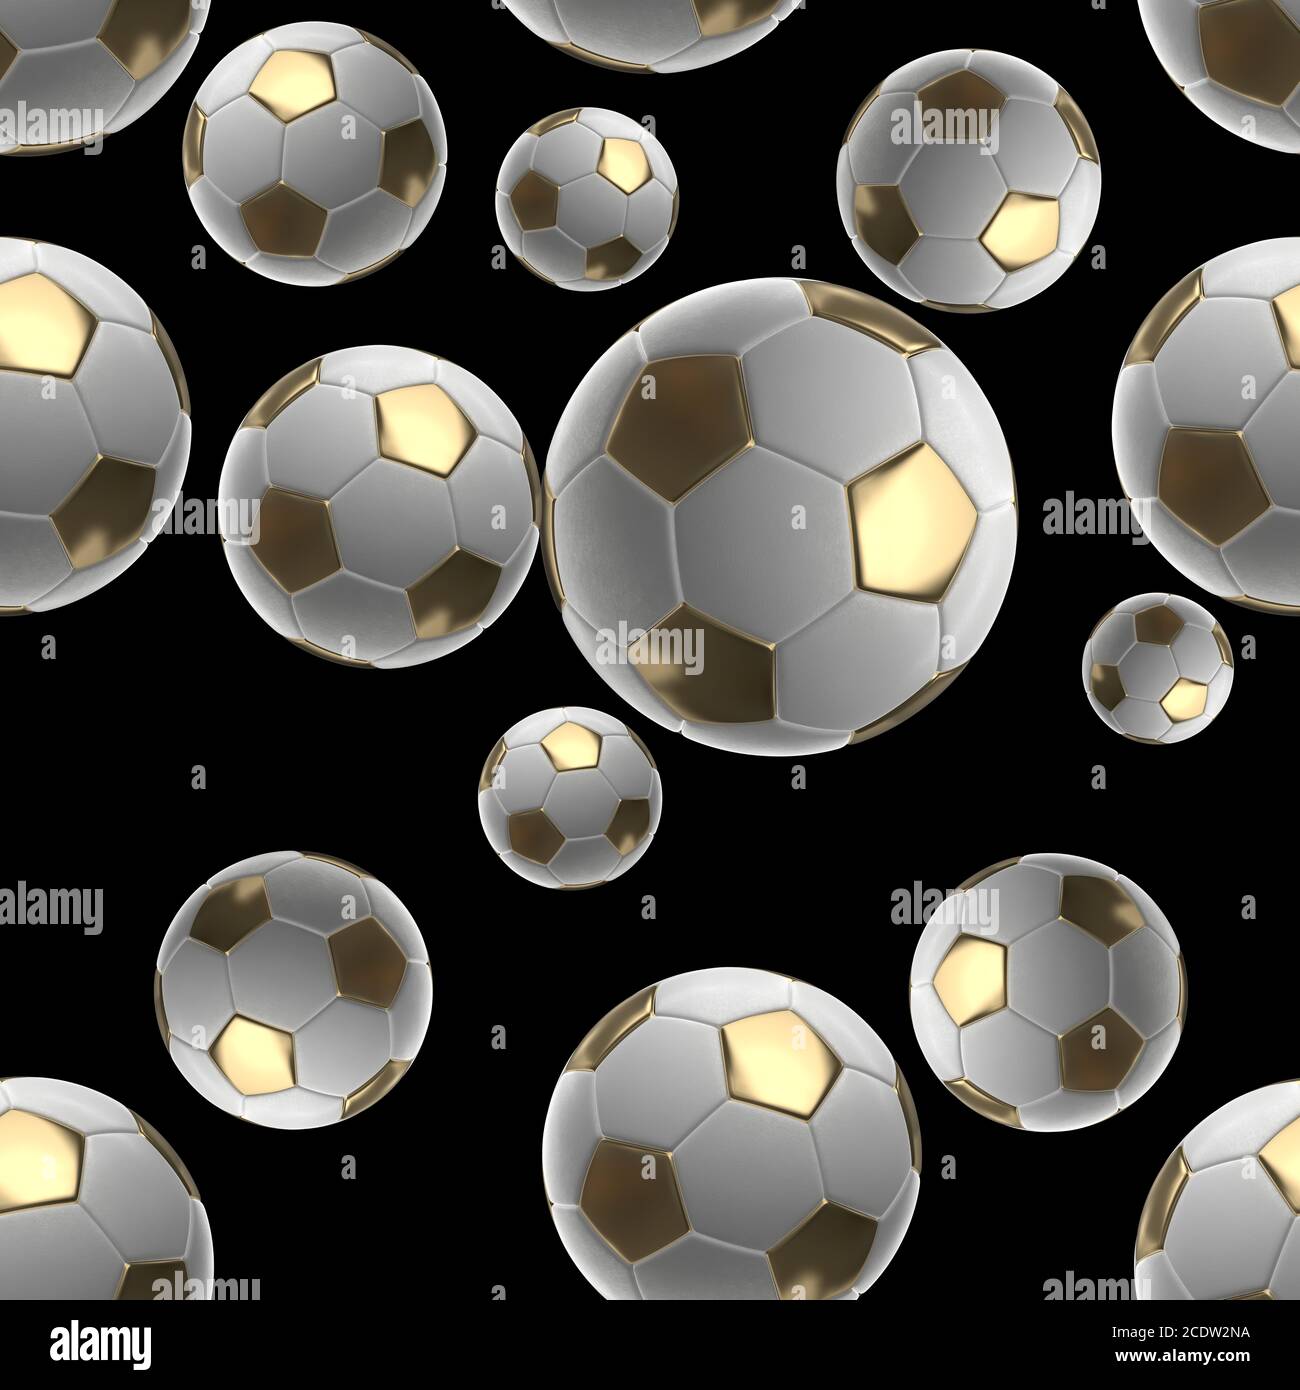 Les balles de soccer isolé sur fond noir motif transparent 3d illustration Banque D'Images